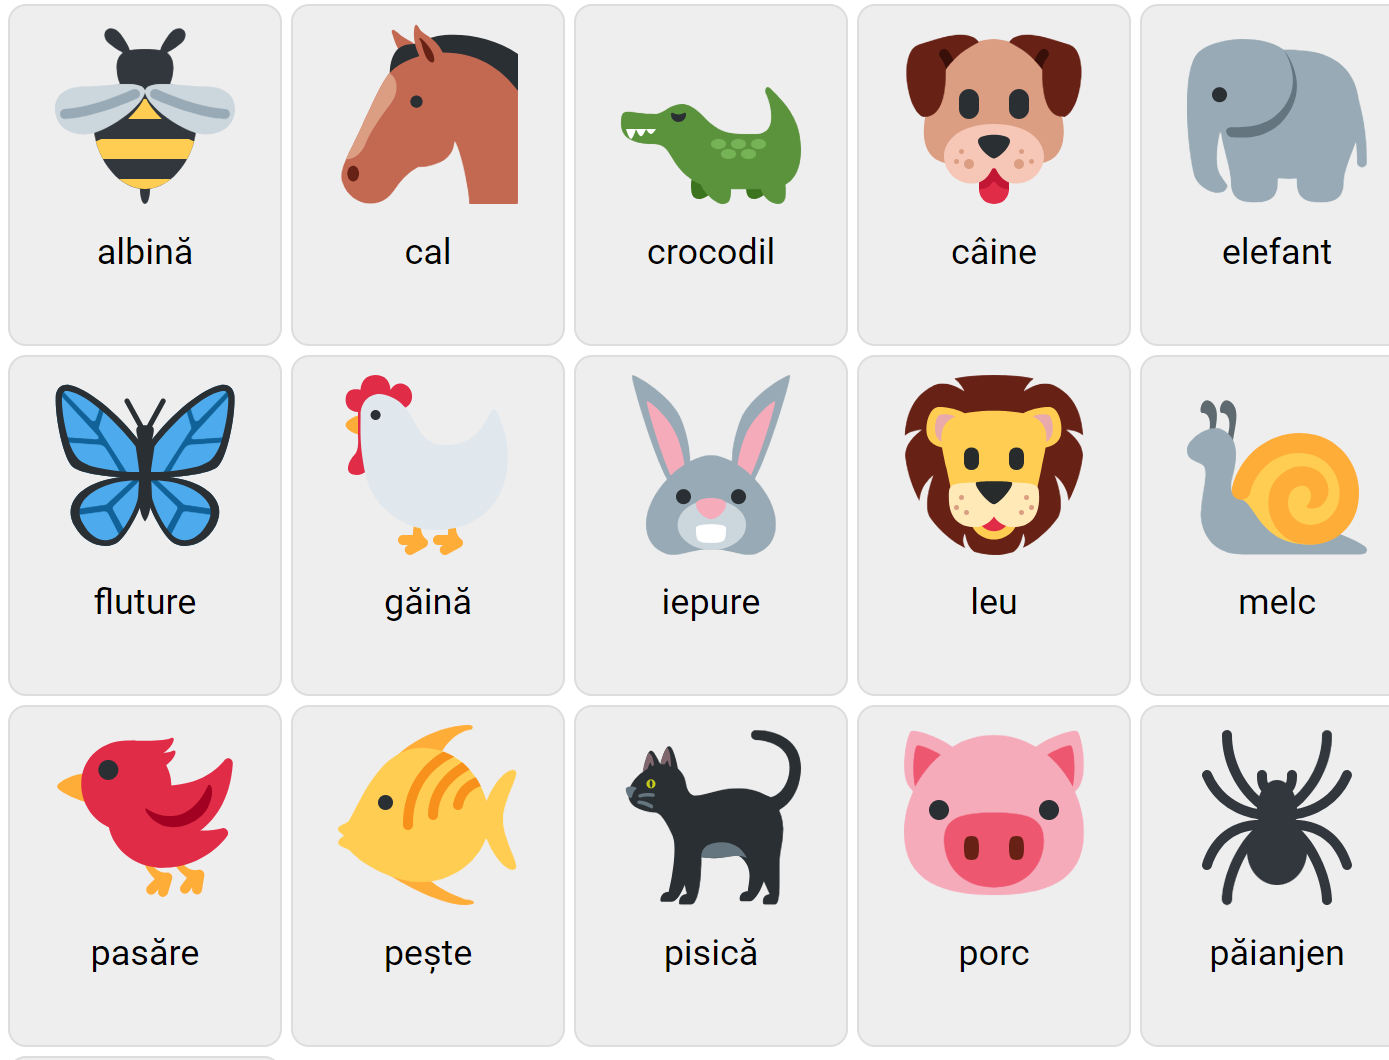 Tiere auf Rumänisch